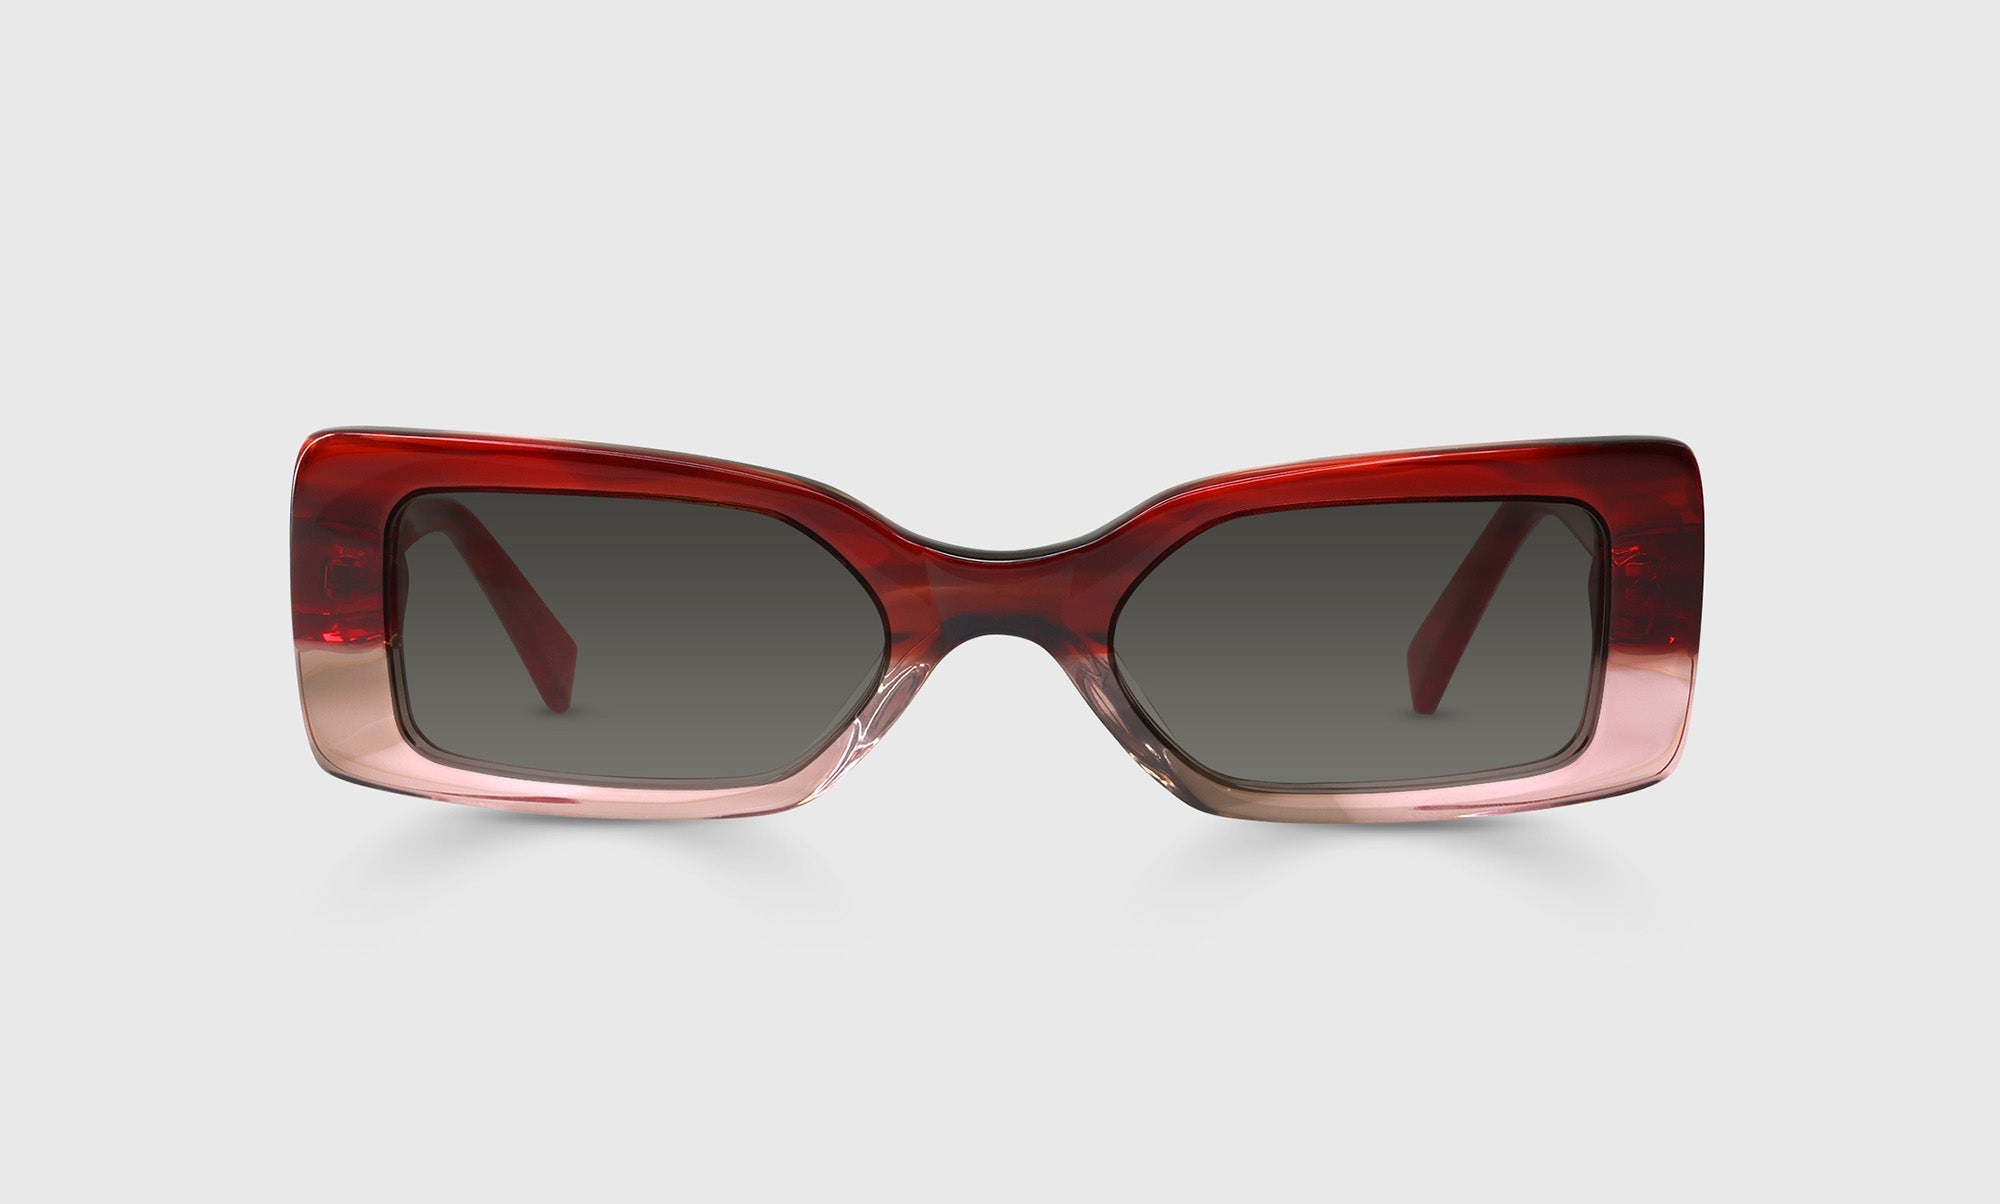 01-rs, 01-pg | bold Eyebobs Kerfuffle, Cateye, Average, polarized grey sunglasses